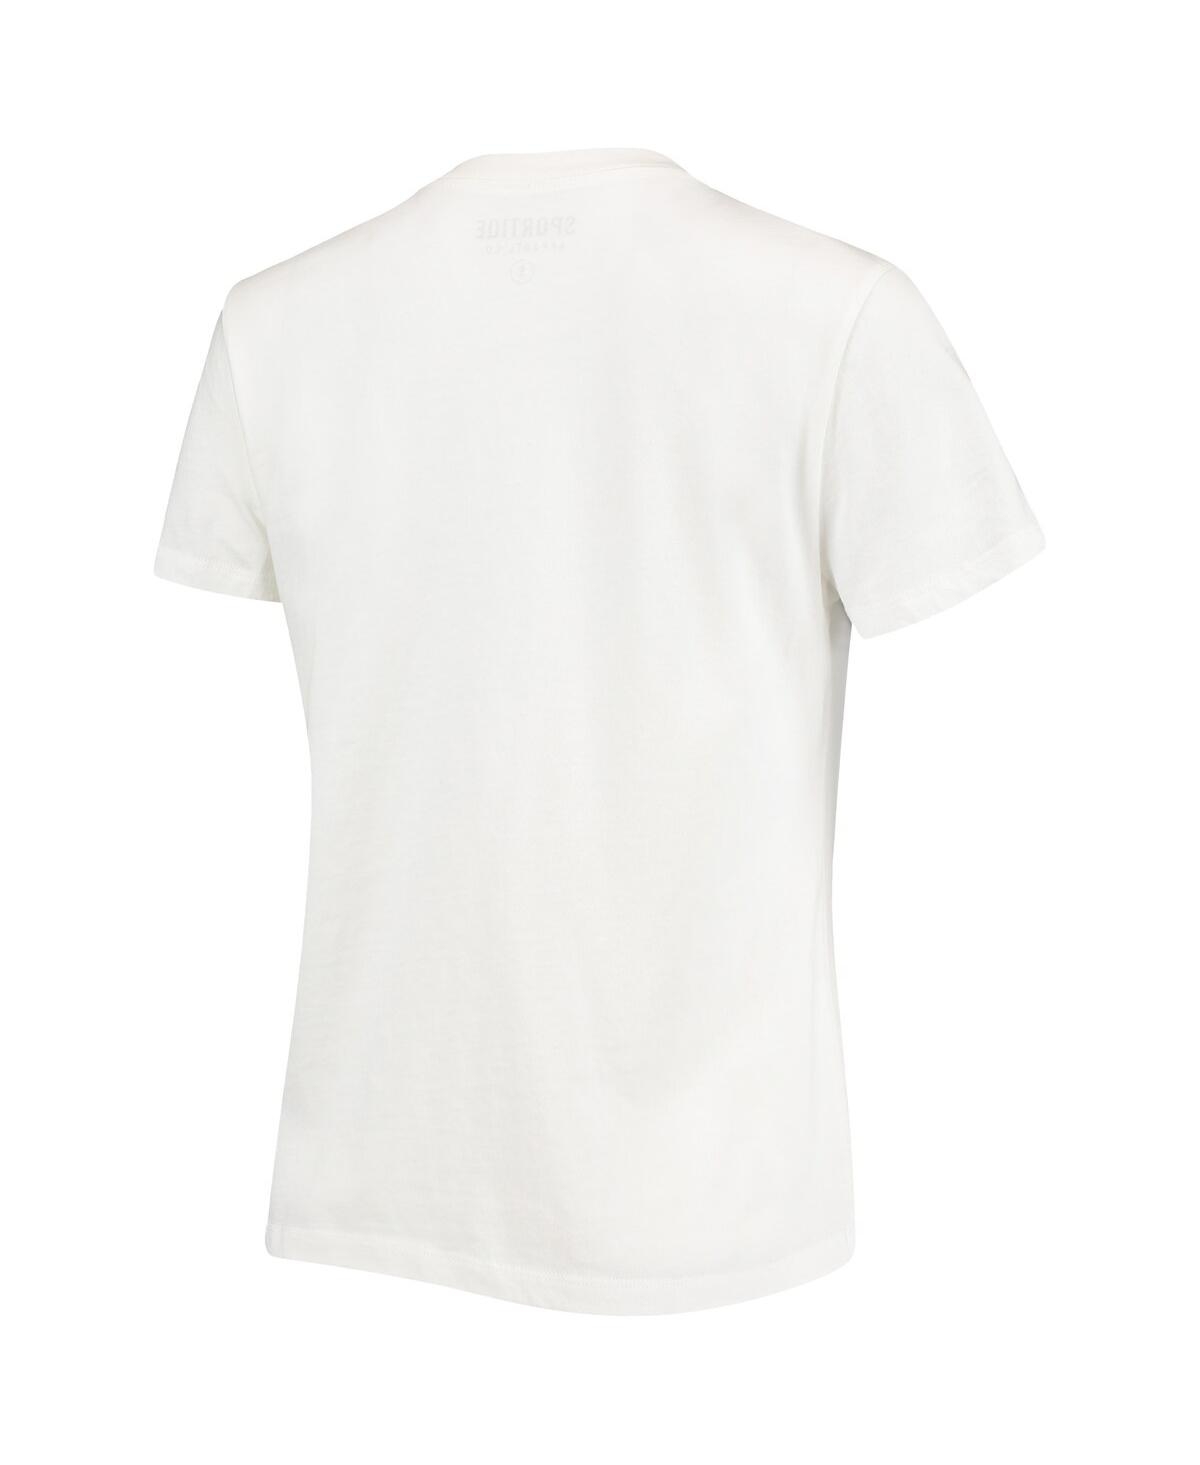 Shop Sportiqe Women's  White Charlotte Hornets Arcadia T-shirt